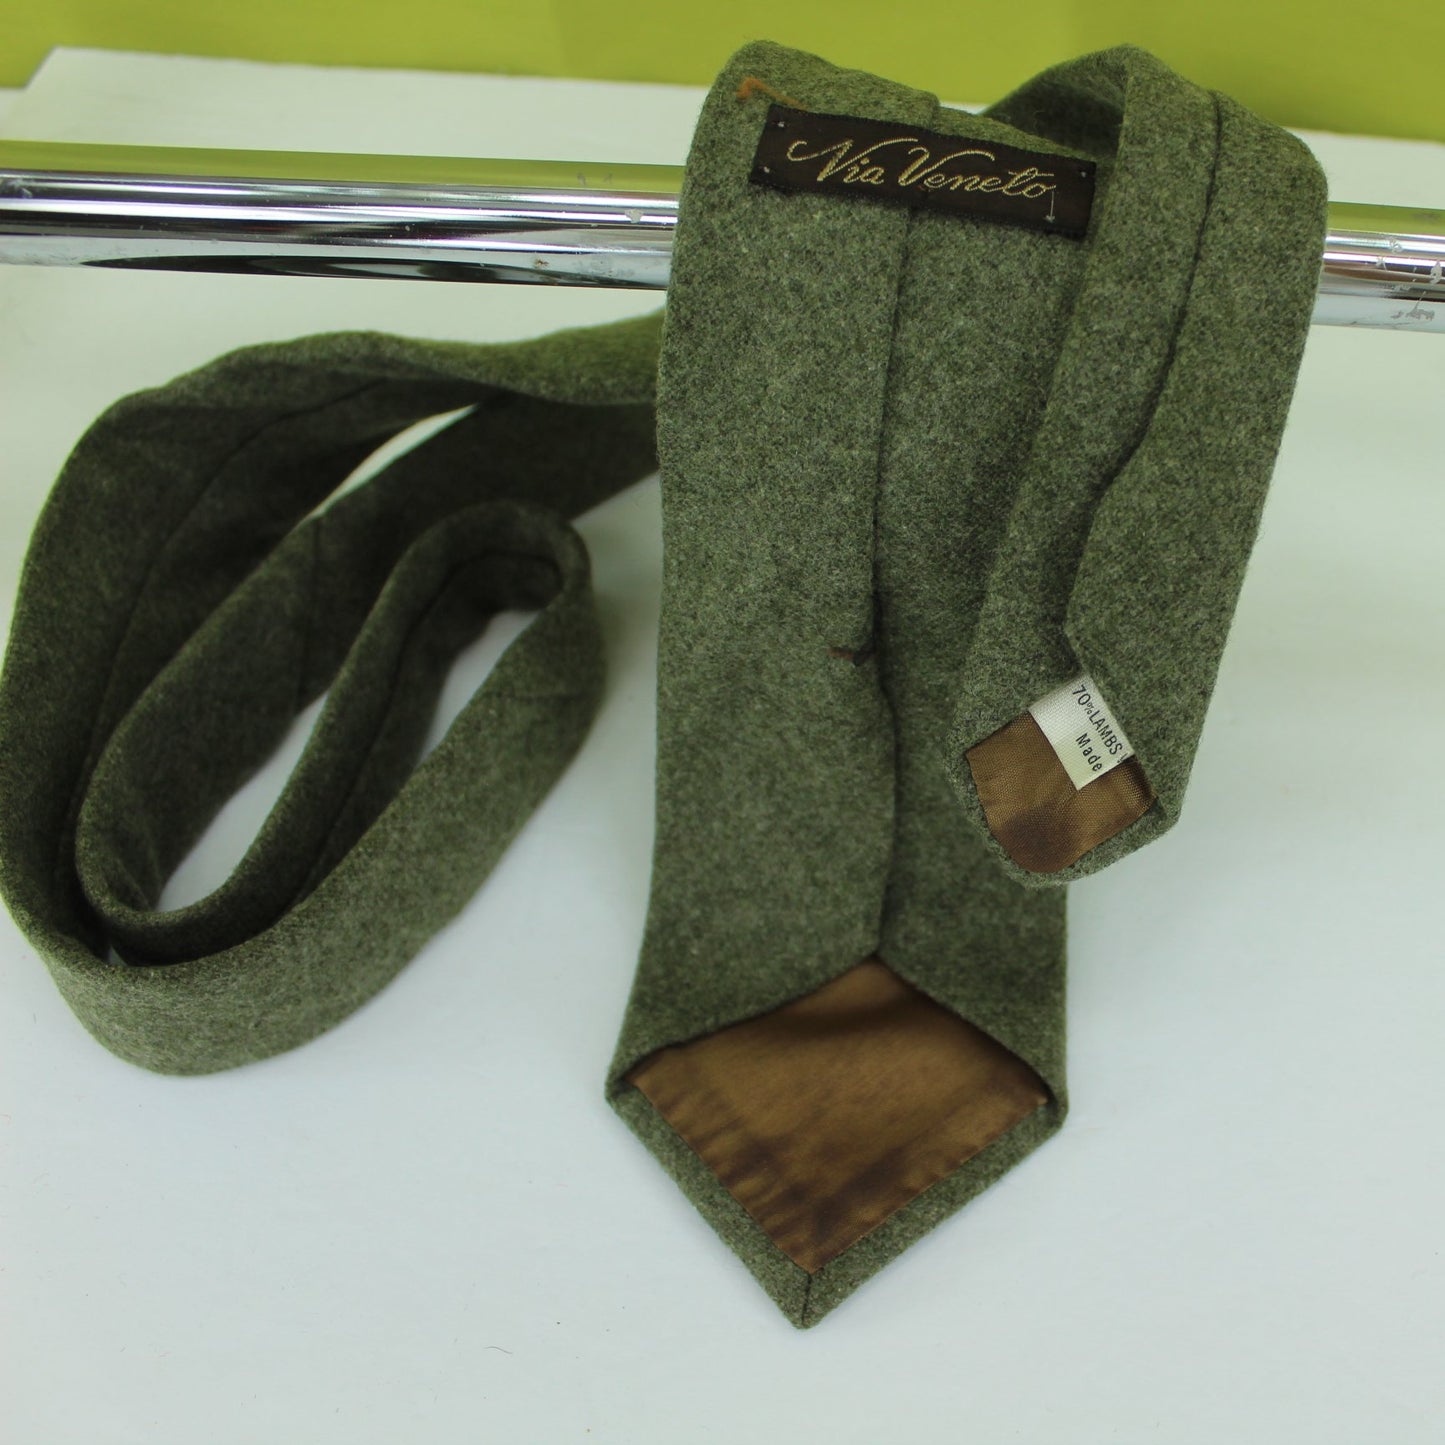 Via Veneto Italy Vintage Necktie Lambswool Nylon Mossy Green 54" X 3"